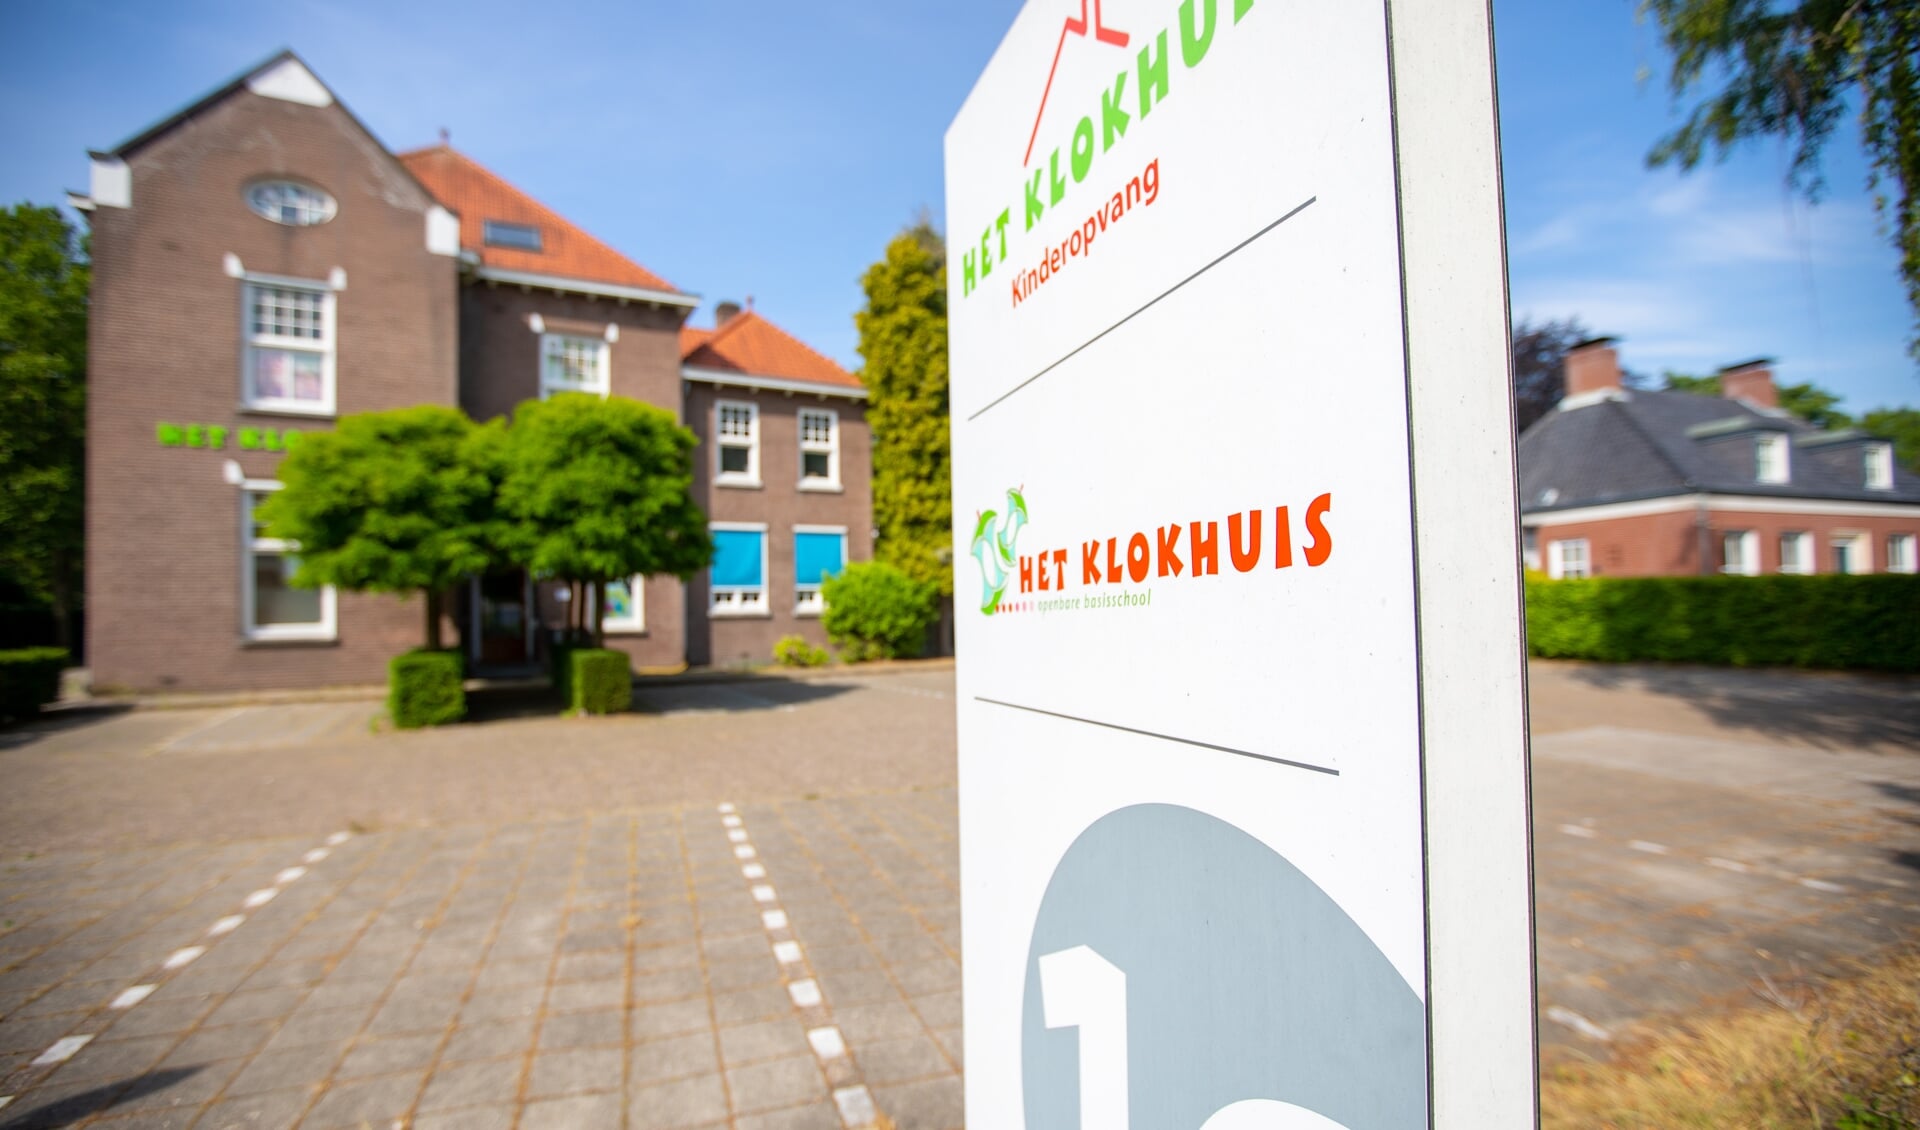 Openbare basisschool Het Klokhuis in Lieshout